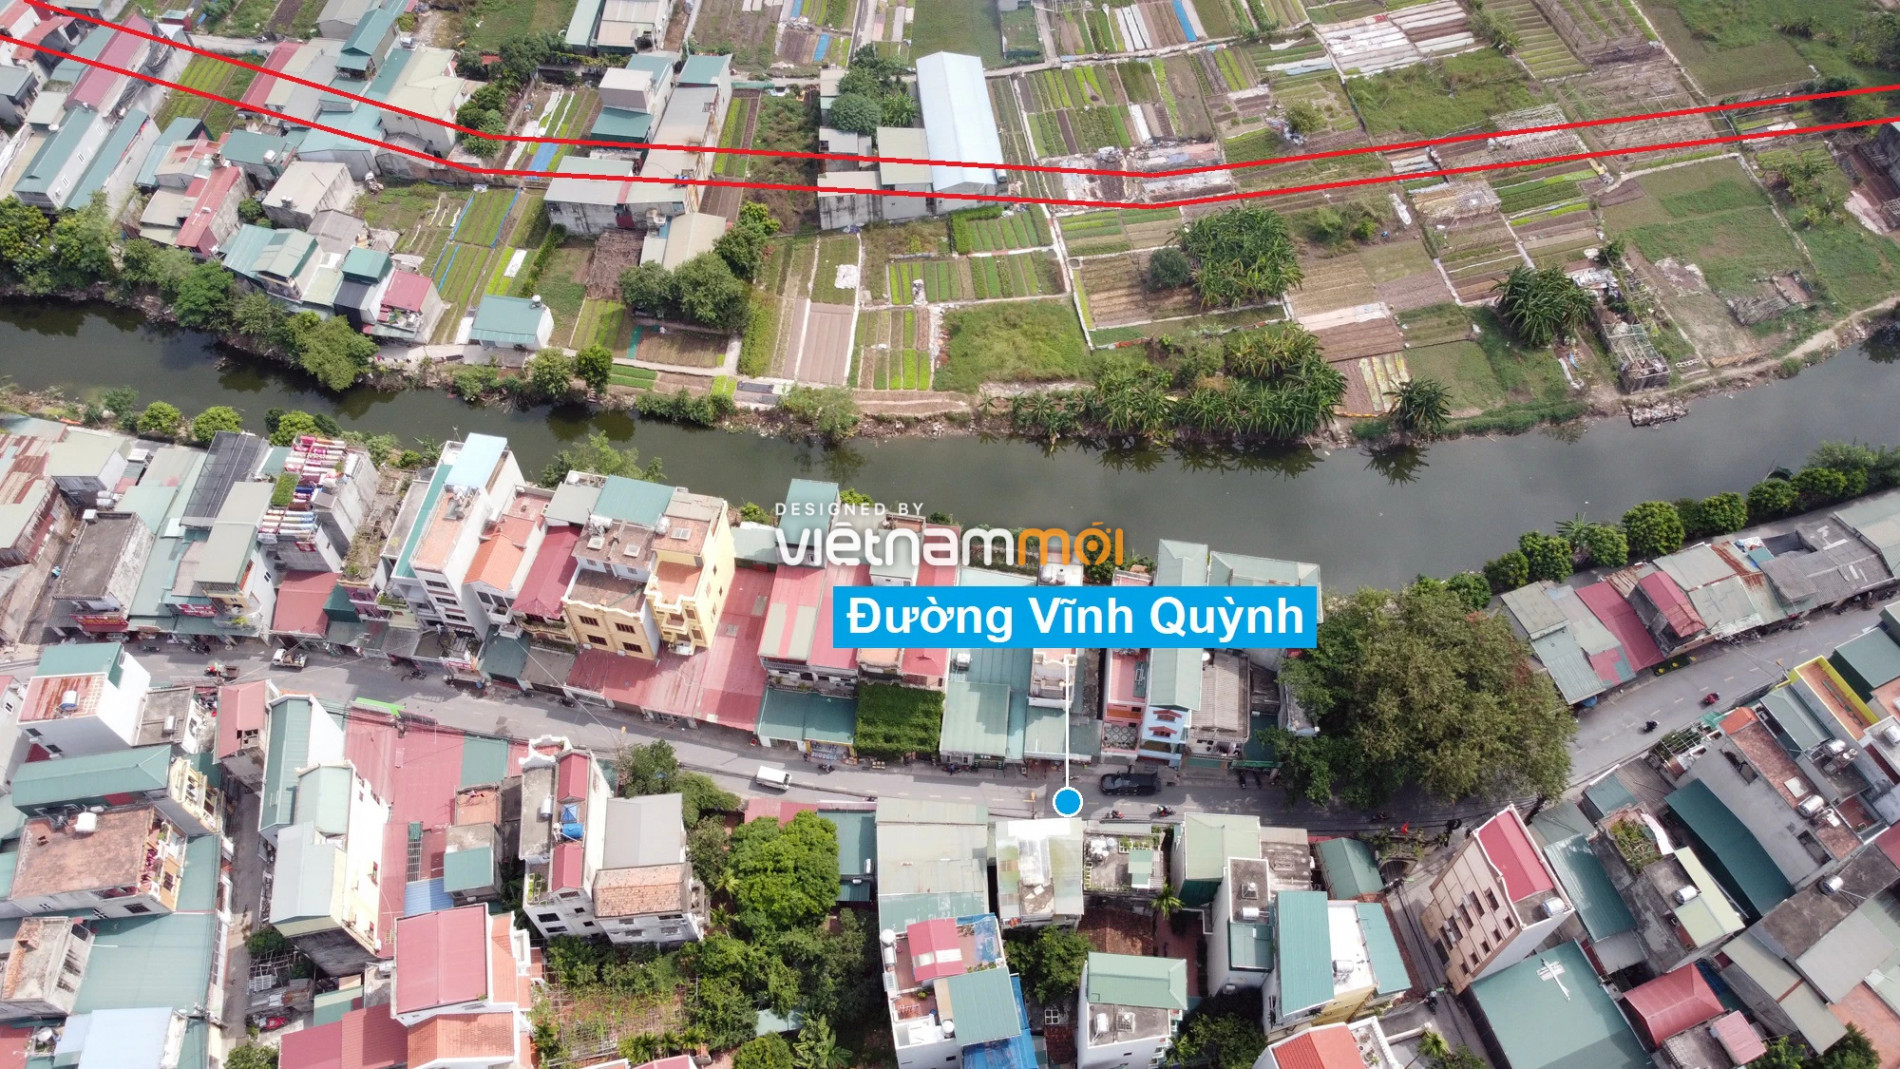 Những khu đất sắp thu hồi để mở đường ở xã Vĩnh Quỳnh, Thanh Trì, Hà Nội (phần 7) - Ảnh 12.